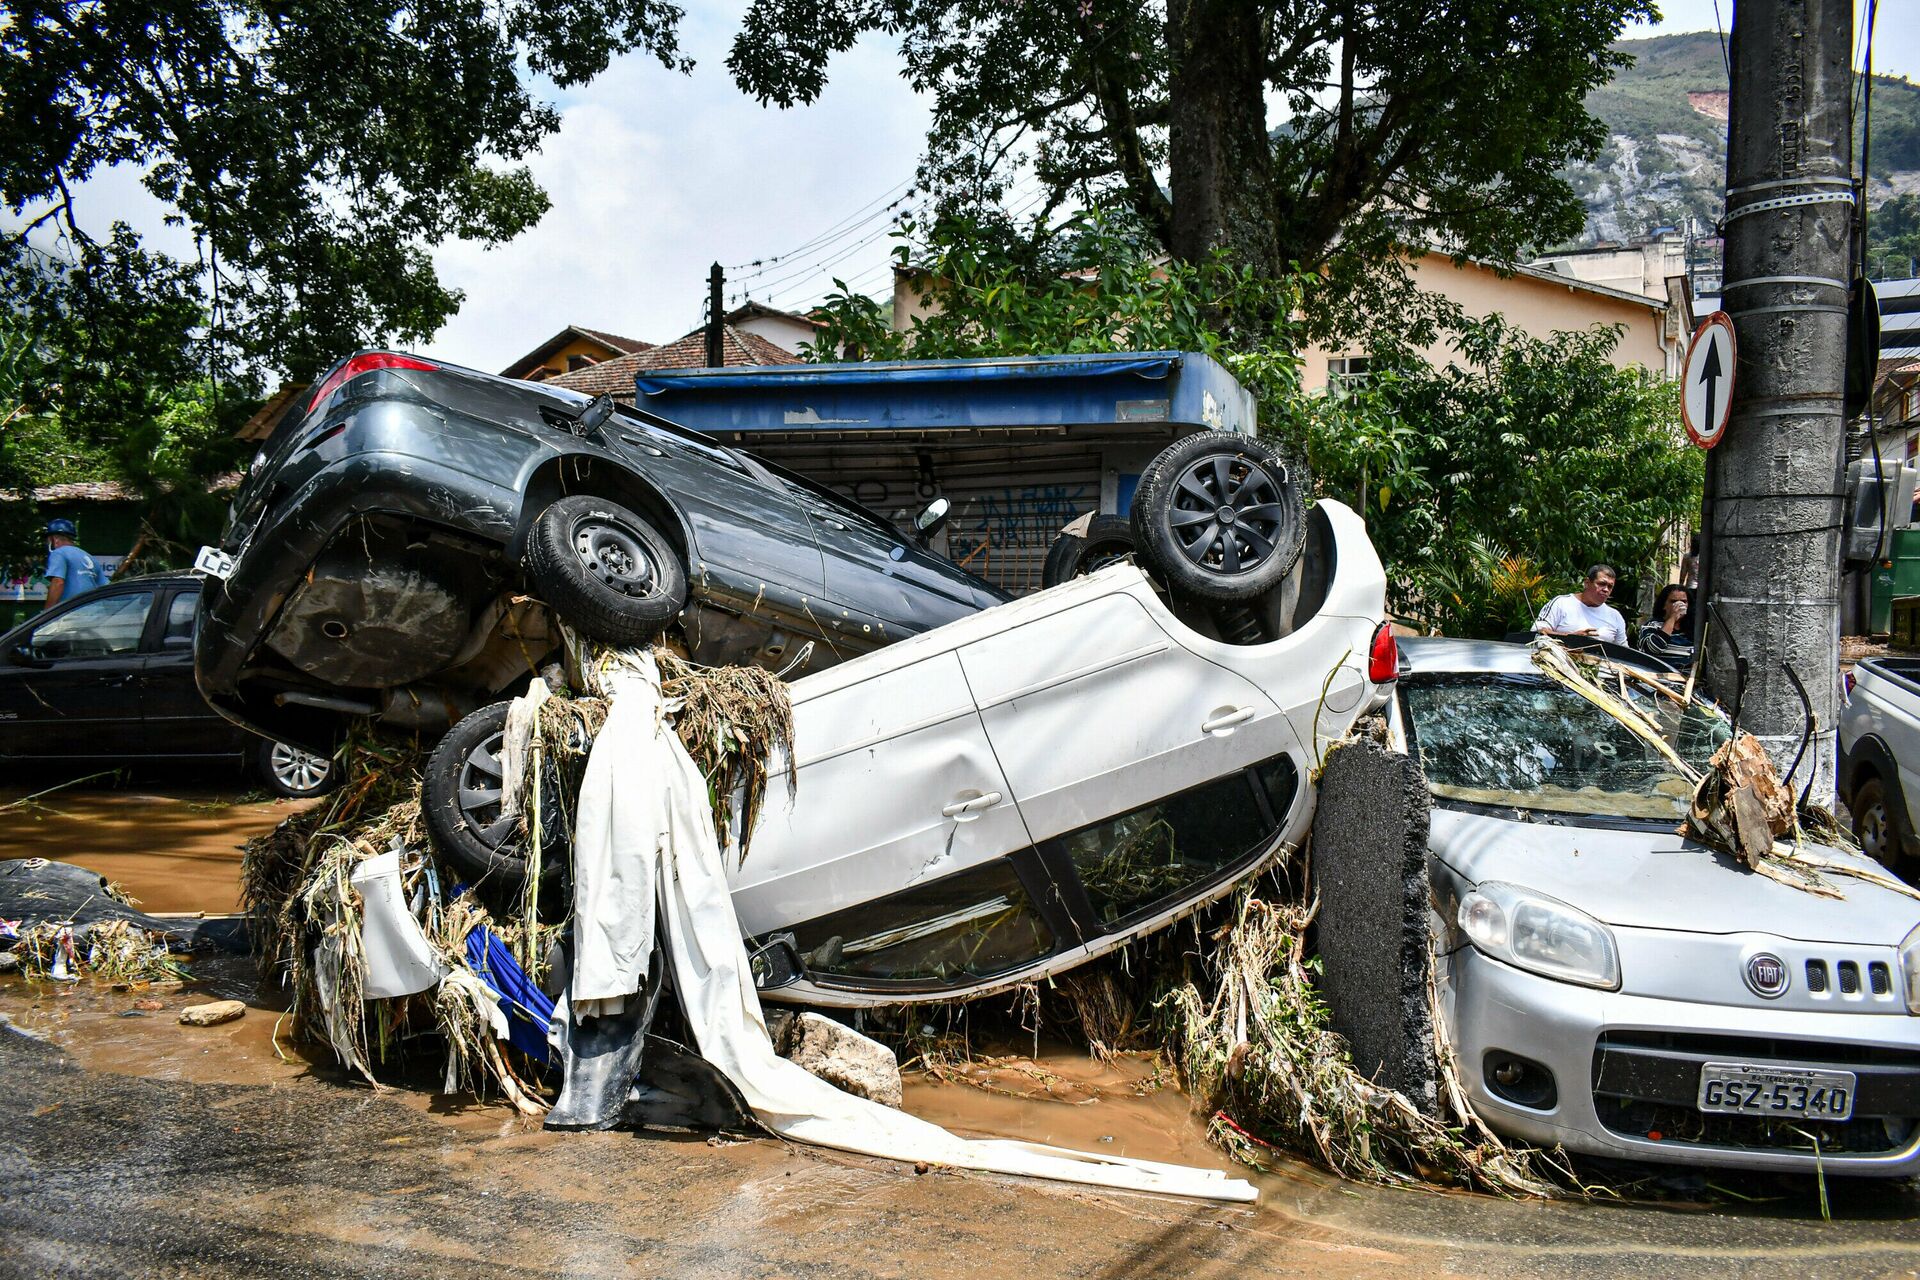 Em Petrópolis, no estado brasileiro do Rio de Janeiro, carros são vistos empilhados após inundação, resultado de fortes chuvas na região serrana fluminense, em 16 de fevereiro de 2022 - Sputnik Brasil, 1920, 17.02.2022